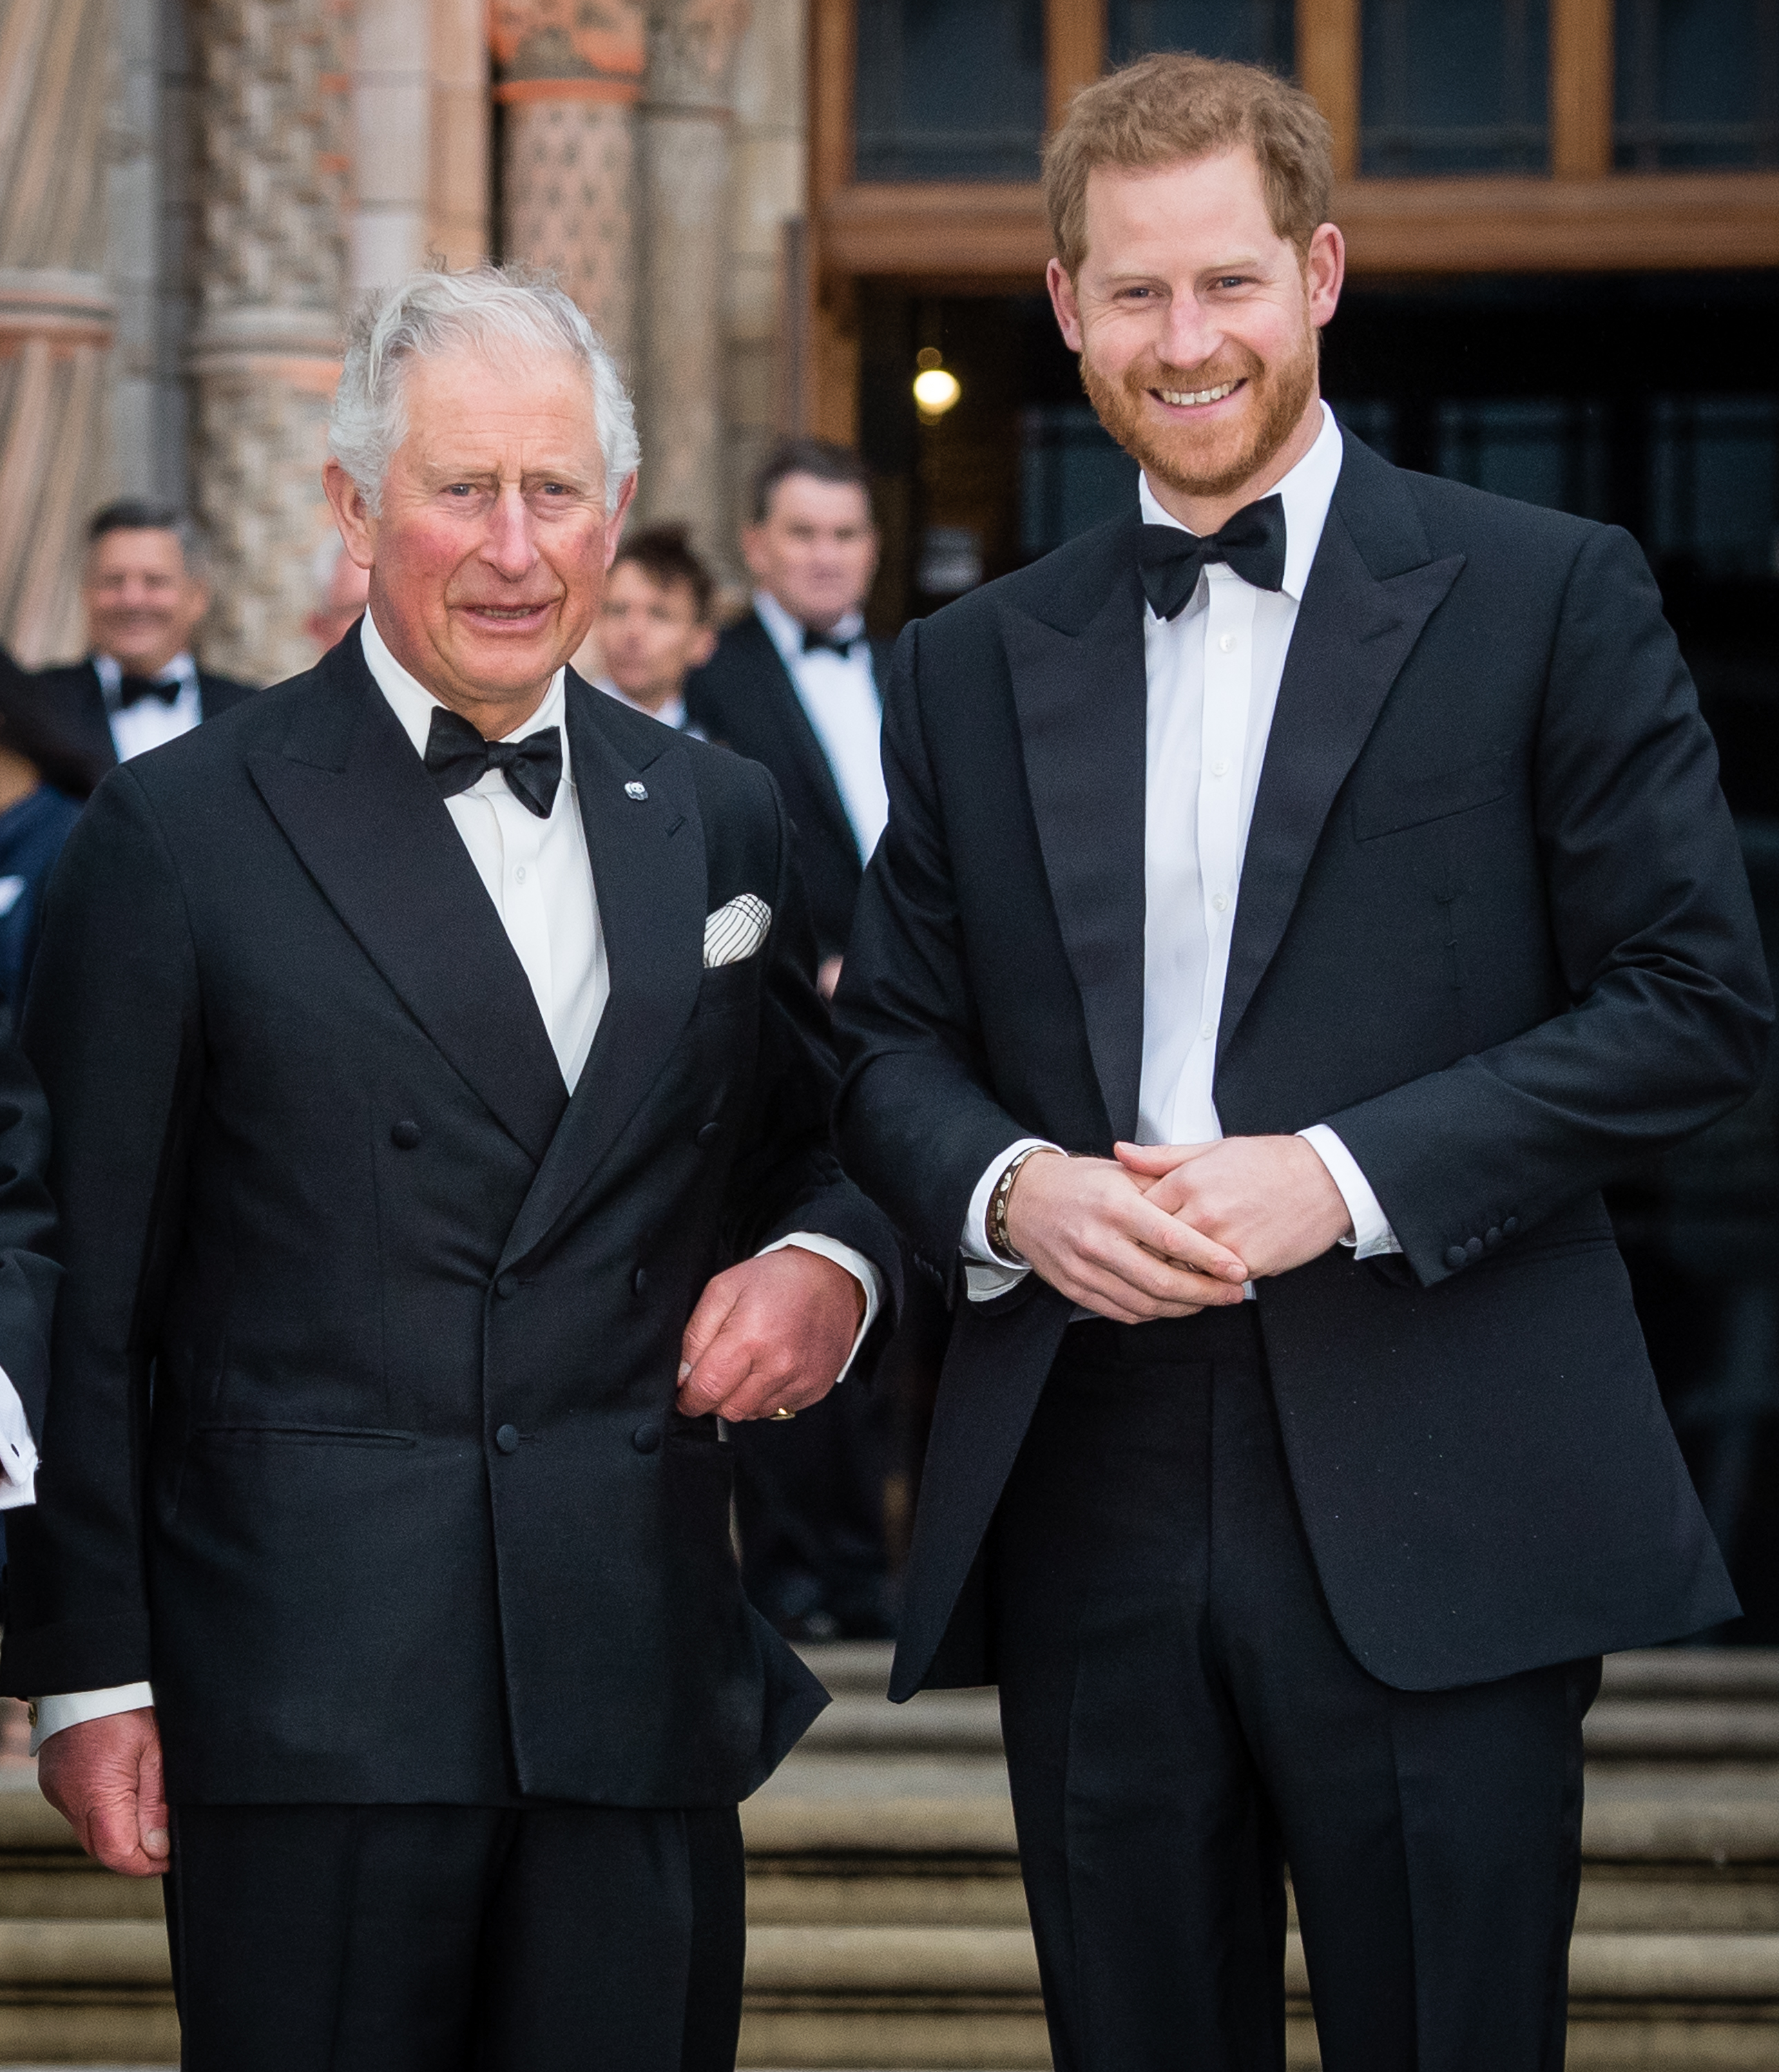 Le roi Charles et le prince Harry assistent à la première de "Notre planète" le 04 avril 2019 à Londres, Angleterre | Source : Getty Images